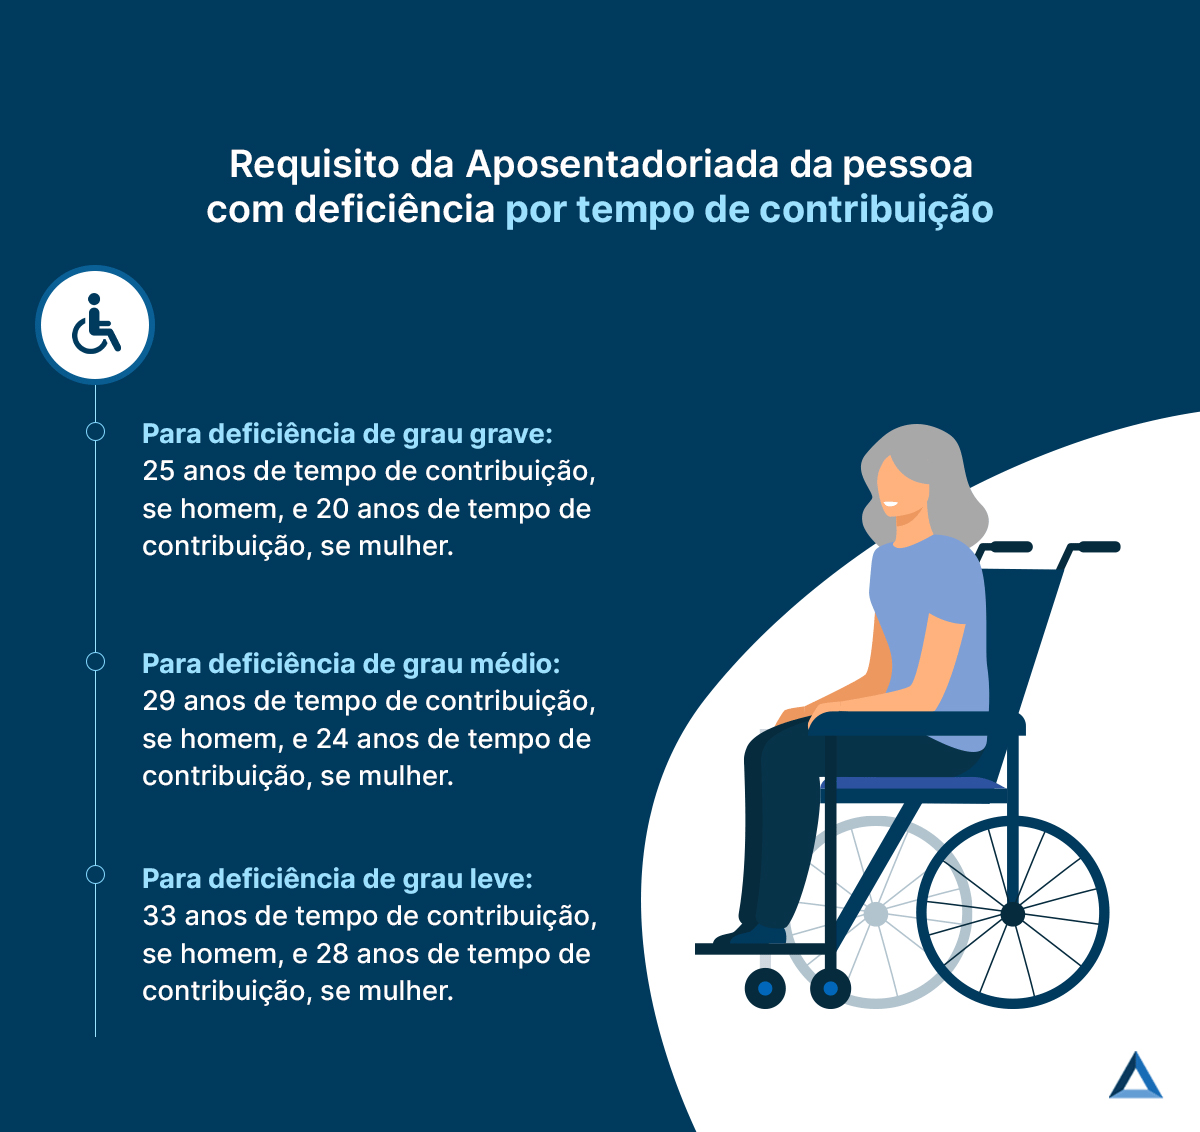 Requisito da Aposentadoria da pessoa com deficiência por tempo de contribuição